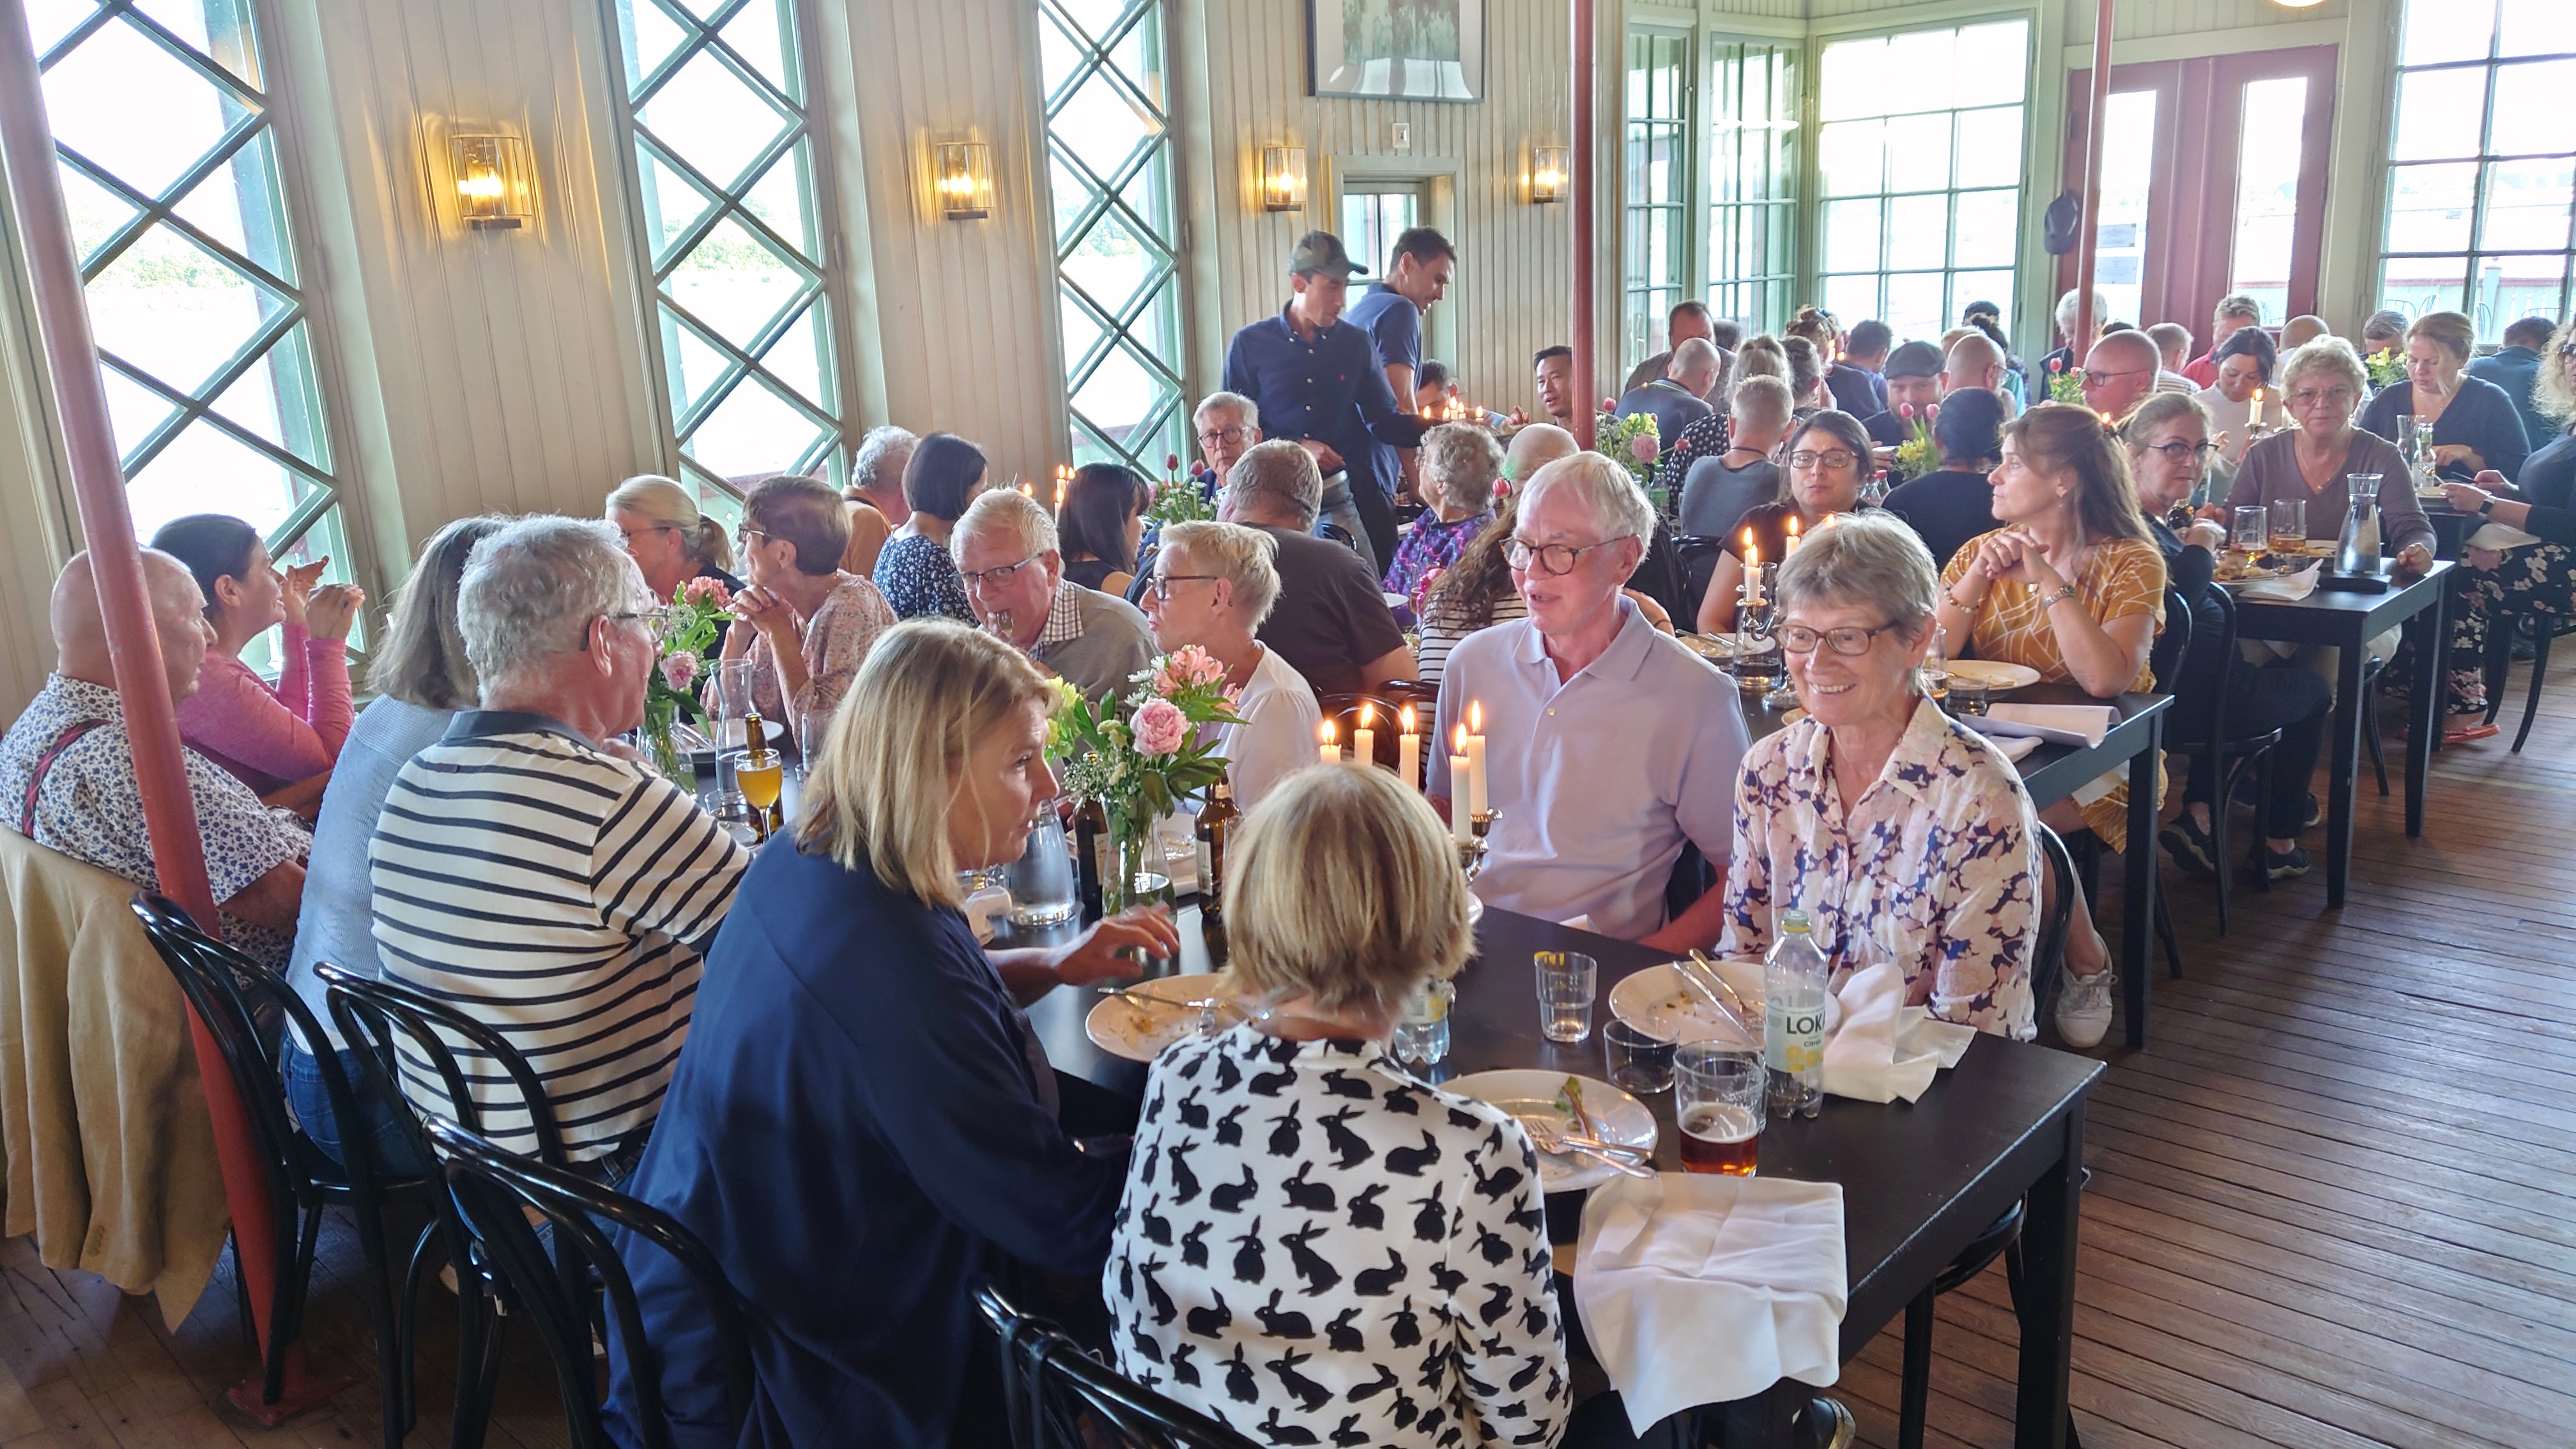 Bastugillets medlemmar samlade i den festdukade restaurangen på Ribersborgs kallbadhus.